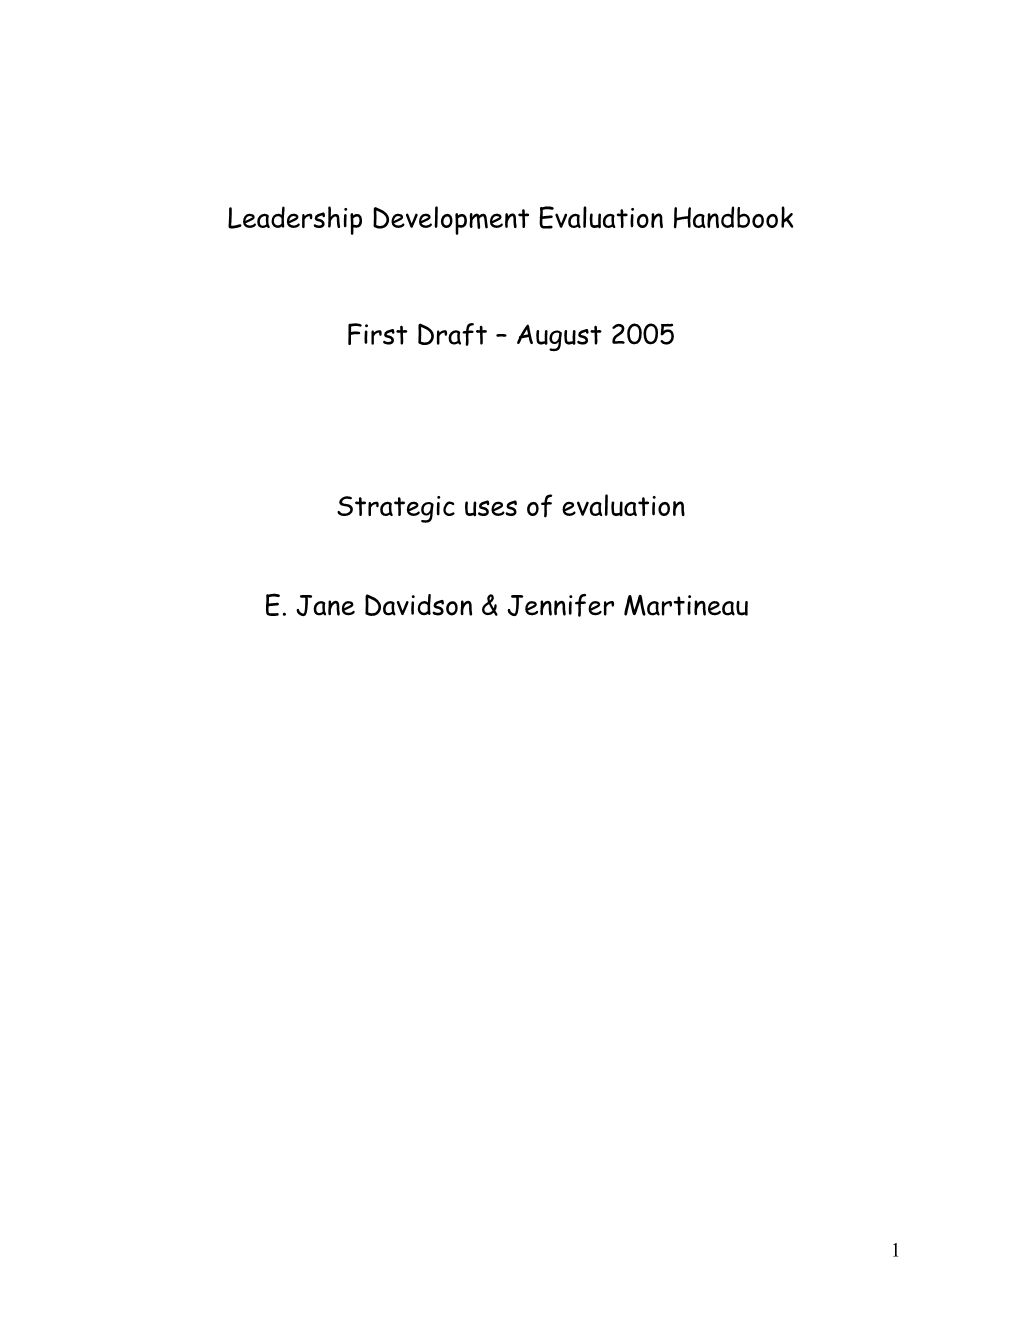 Chapter 12: Strategic Uses of Evaluation (Authors: Jane Davidson & Jennifer Martineau)